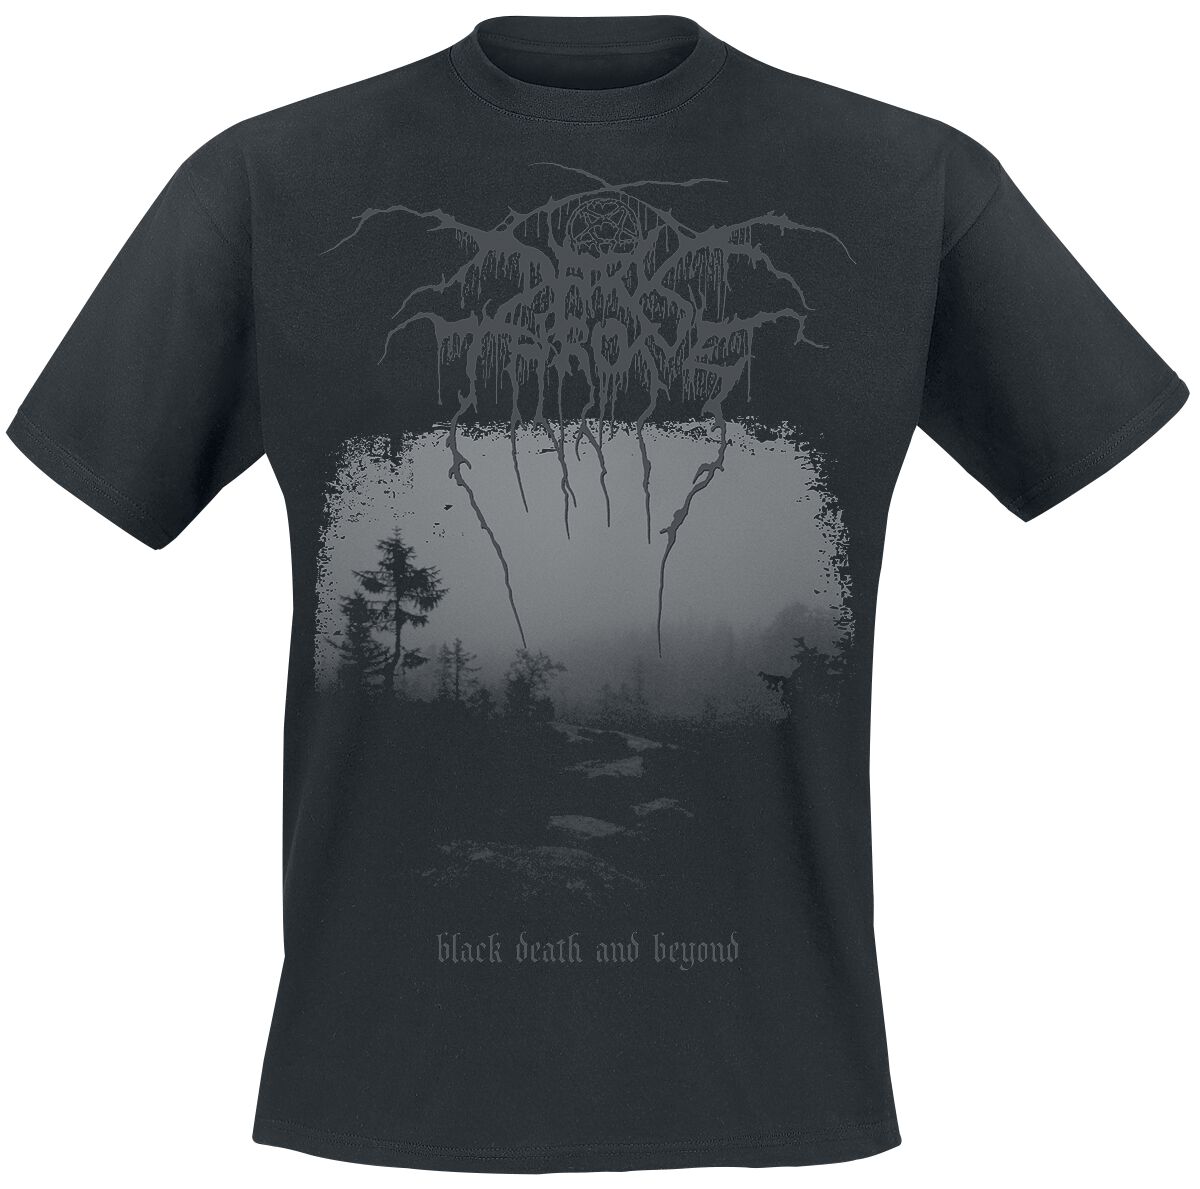 Darkthrone T-Shirt - Black death and beyond - S bis XL - für Männer - Größe M - schwarz  - Lizenziertes Merchandise!